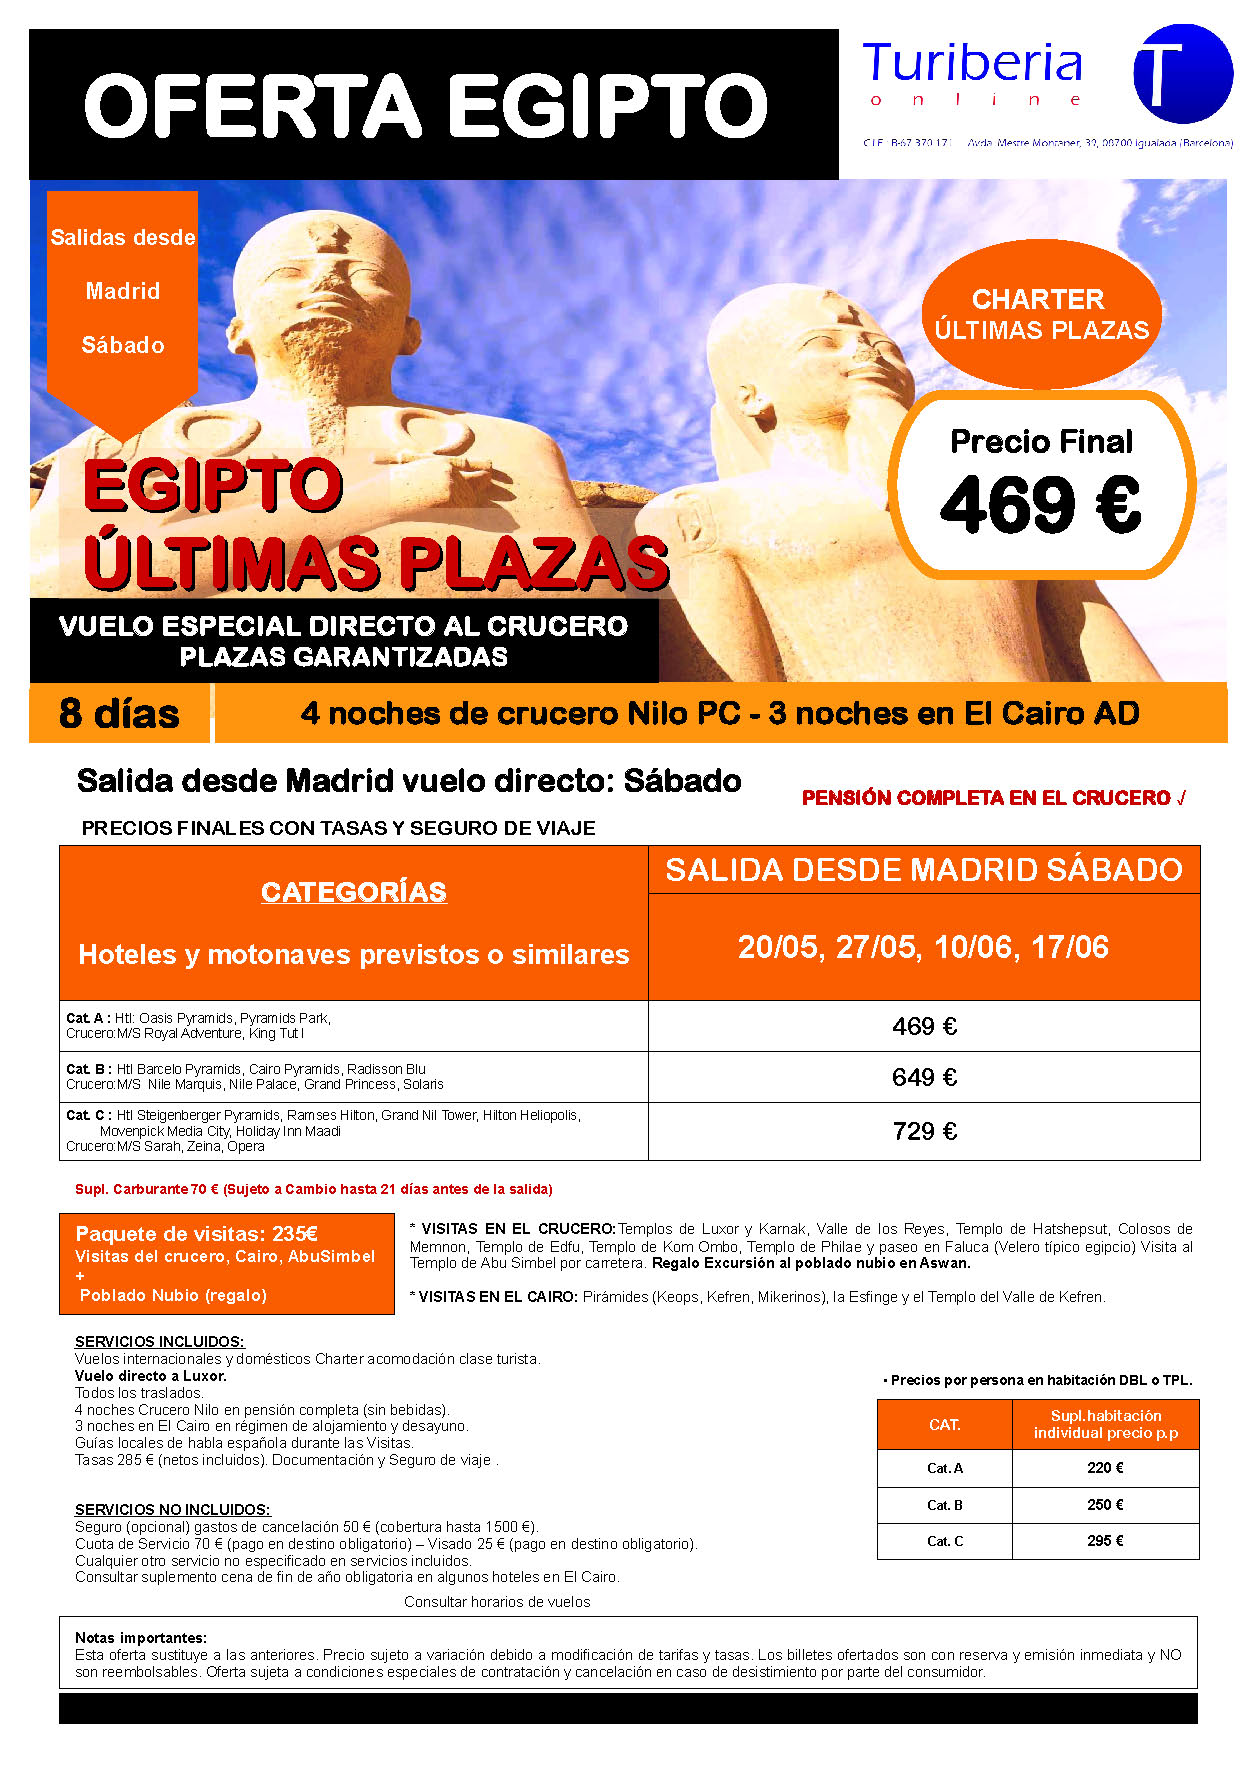 Ofertas Turiberia Ultimas Plazas Mayo-Junio 2023 Egipto Charter Esencial TUT-1 8 dias salida en vuelo especial directo desde Madrid